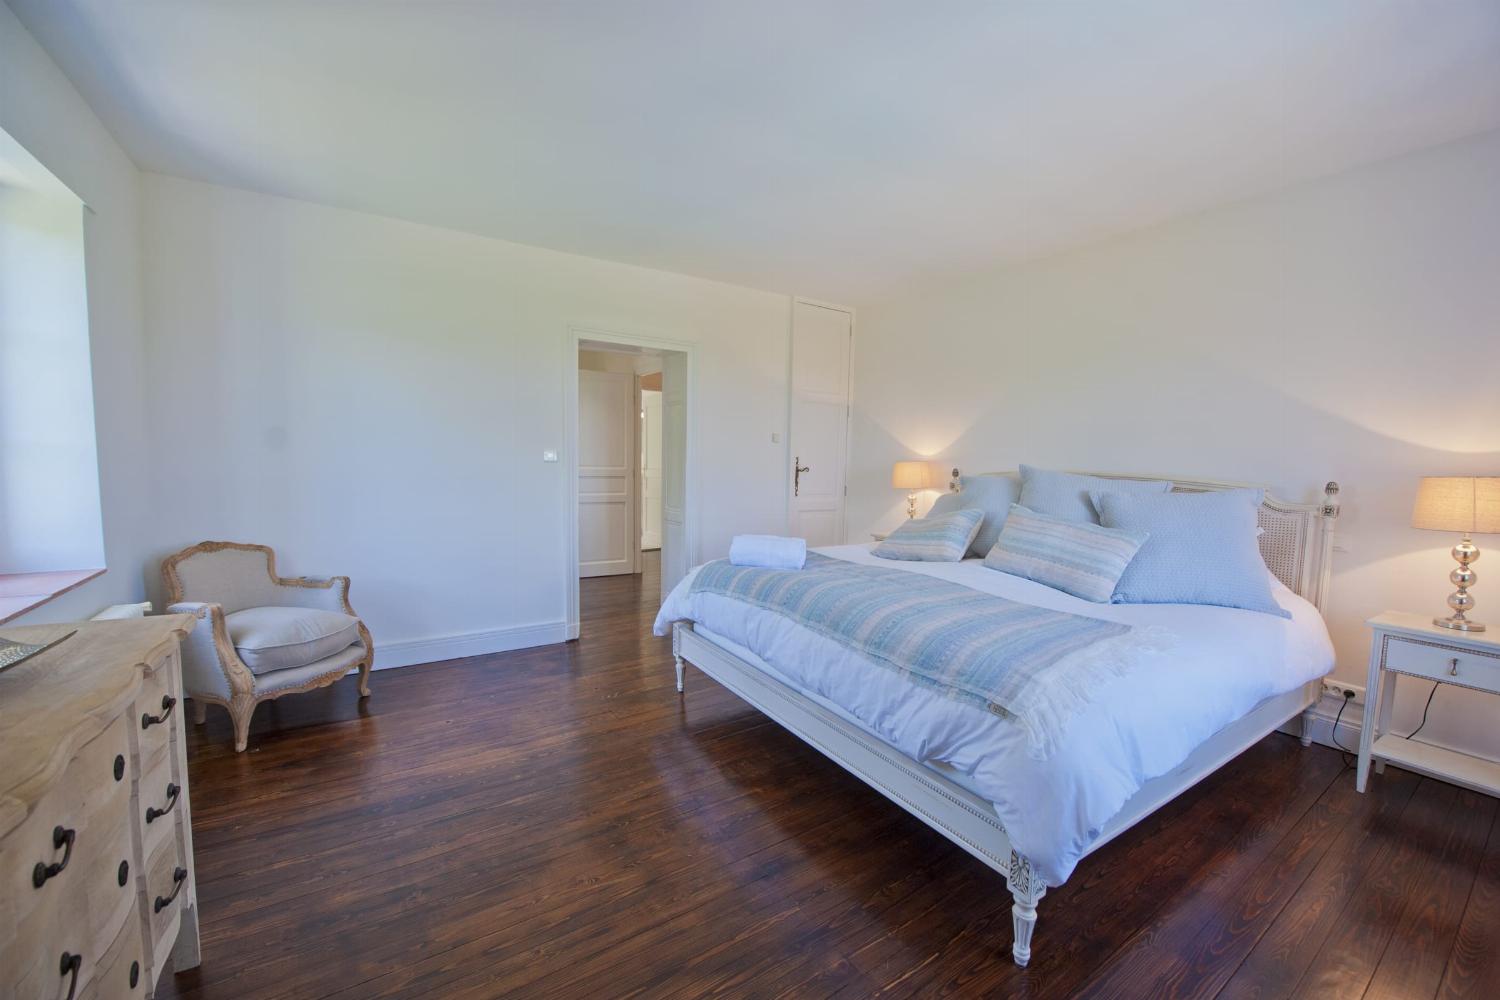 Bedroom | Rental home in Dordogne